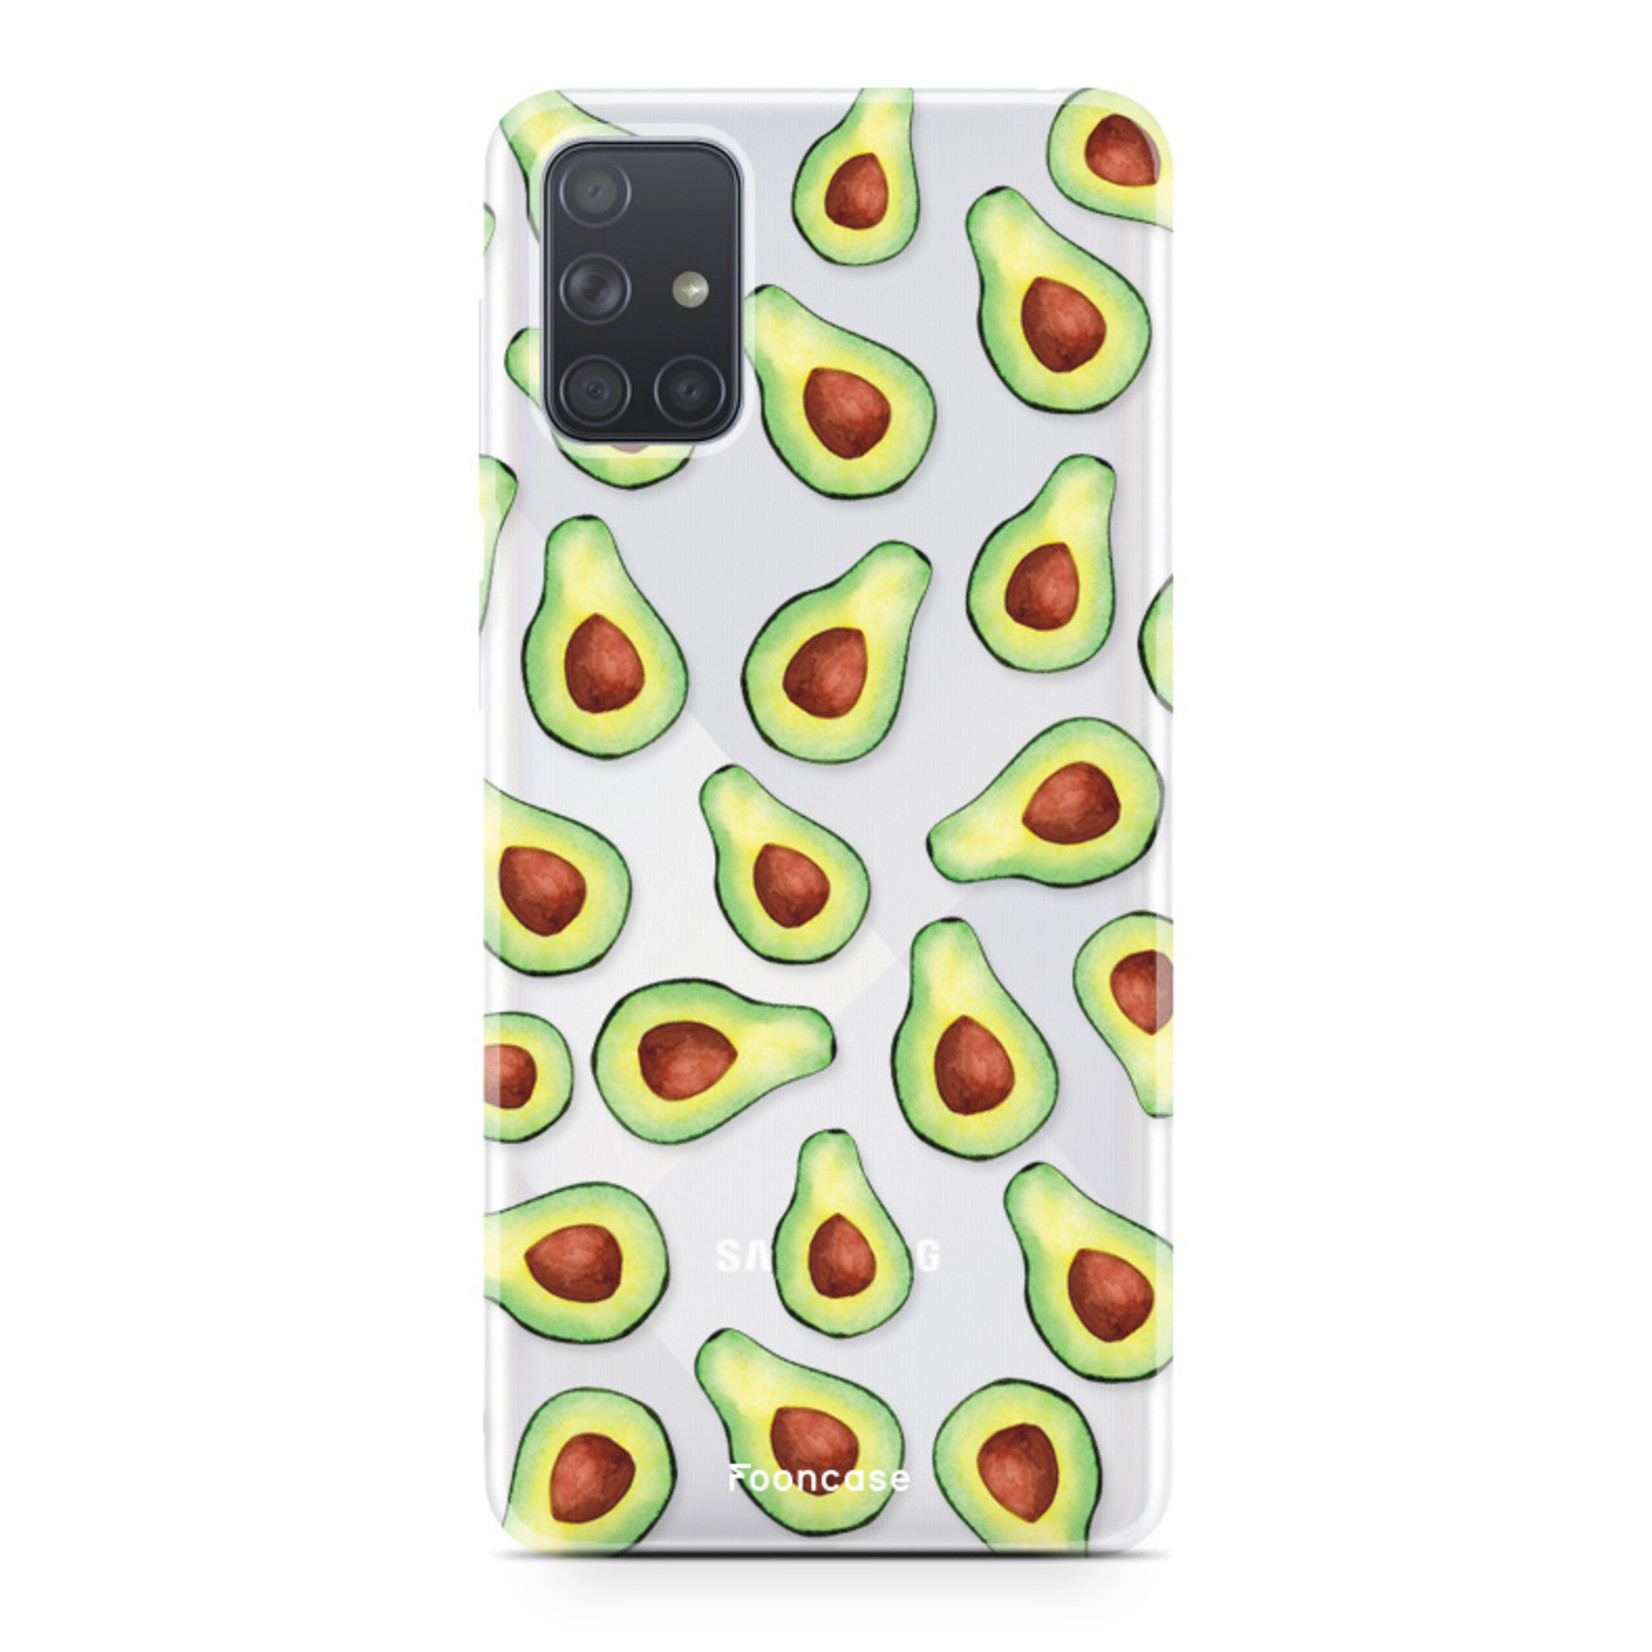 Samsung Galaxy A71 Cover -  Avocado